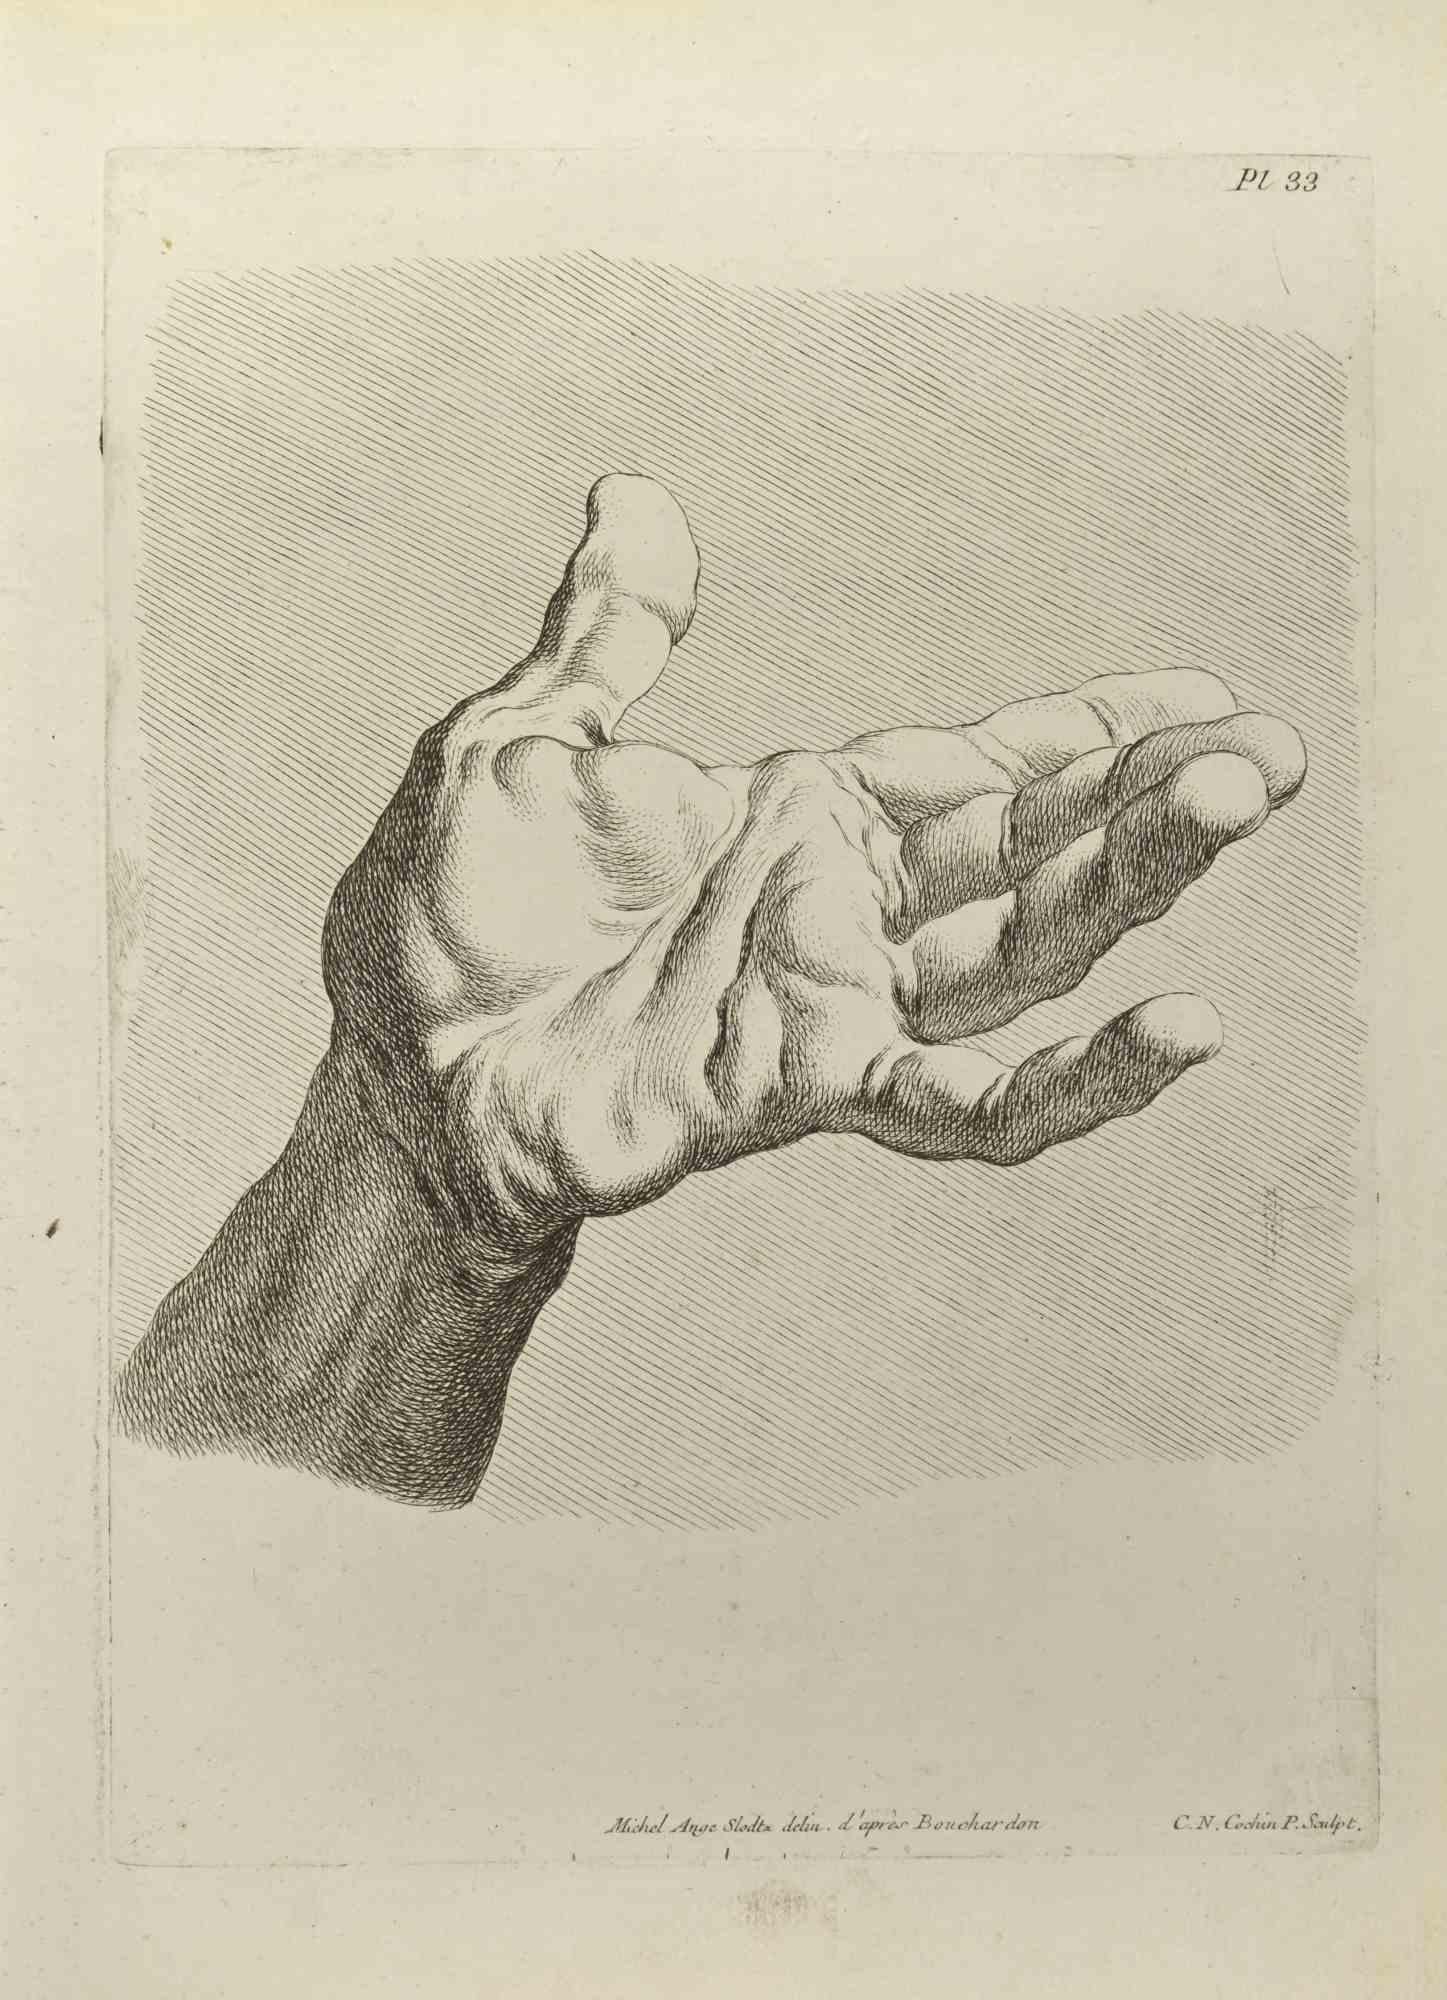 Die Studie der Hand nach Bouchardon ist eine Radierung von Nicholas Cochin aus dem Jahr 1755.

Signiert auf der Platte.

Gute Bedingungen.

Das Kunstwerk wird mit sicheren Strichen dargestellt.

Die Radierung wurde für die Anatomie-Studie "JOMBERT,